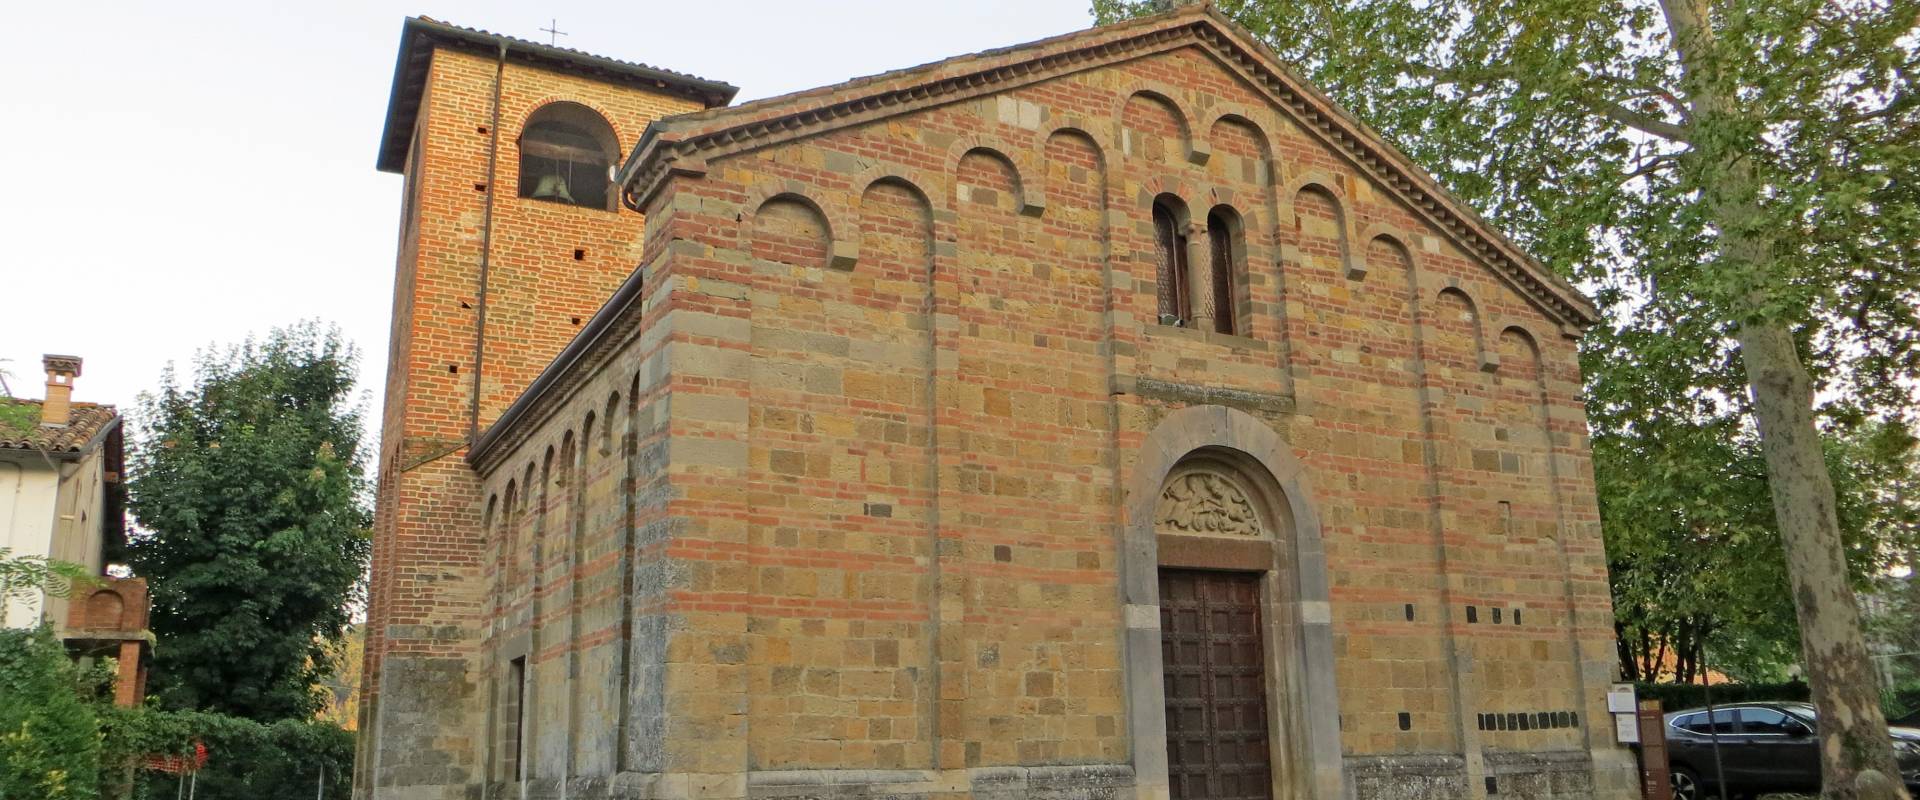 Pieve di San Biagio (Talignano, Sala Baganza) - facciata e lato nord 2 2019-09-16 foto di Parma198